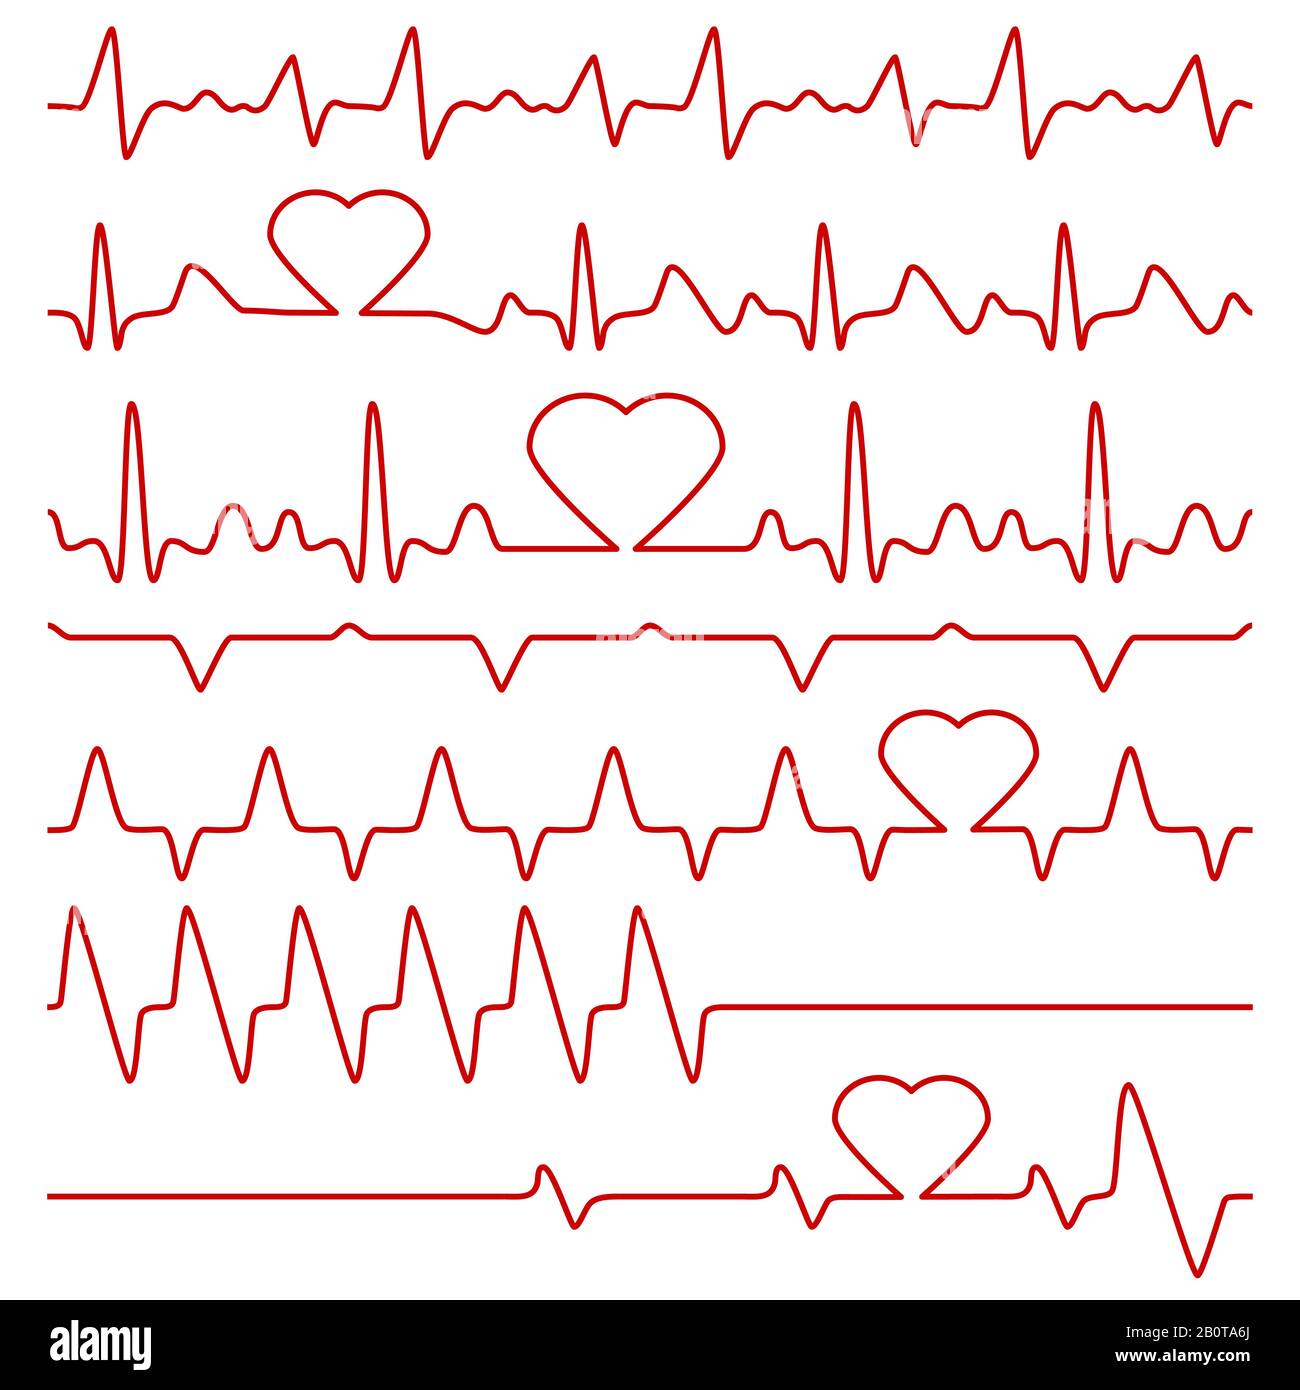 Simboli del cardiogramma e del vettore del polso con forma cardiaca. Cardiogramma medico, illustrazione del cardiogramma a frequenza di linea rossa Illustrazione Vettoriale